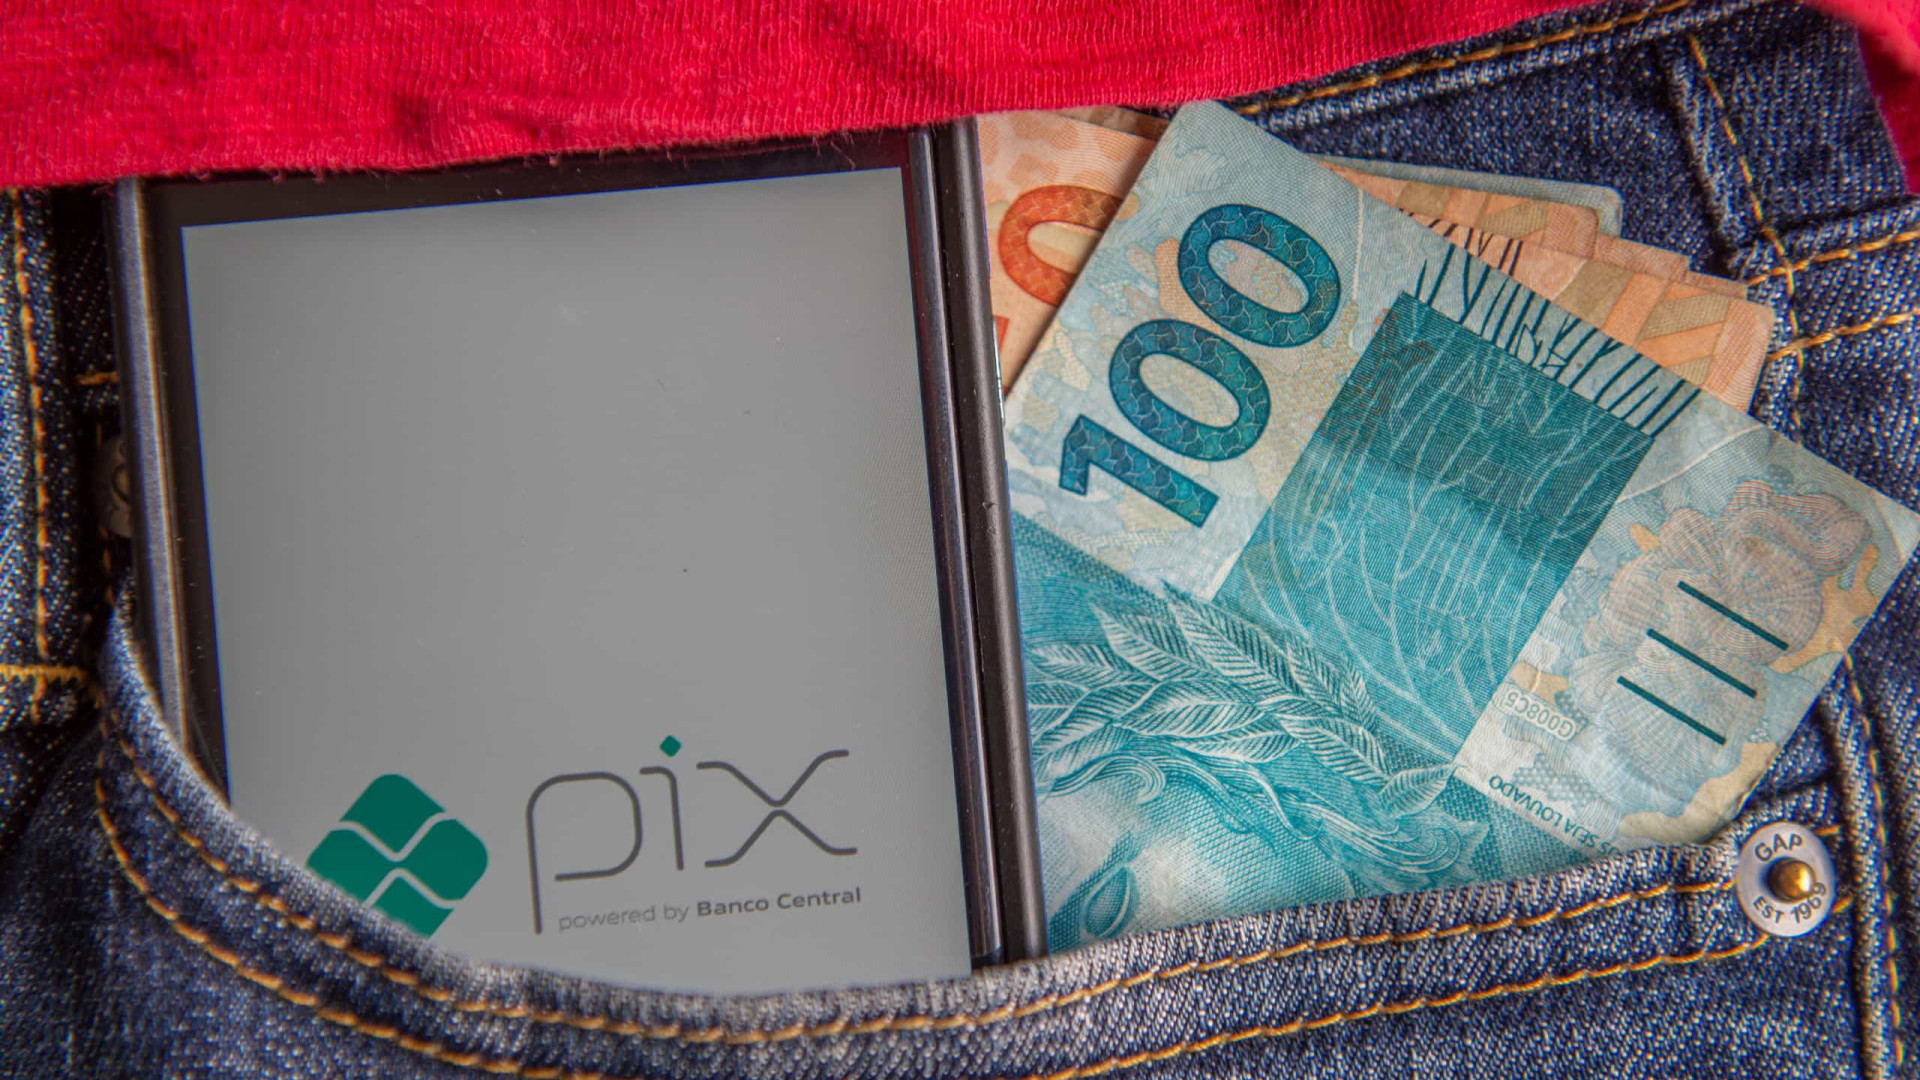 Valor médio de transações do Pix foi R$ 90 no primeiro dia de teste